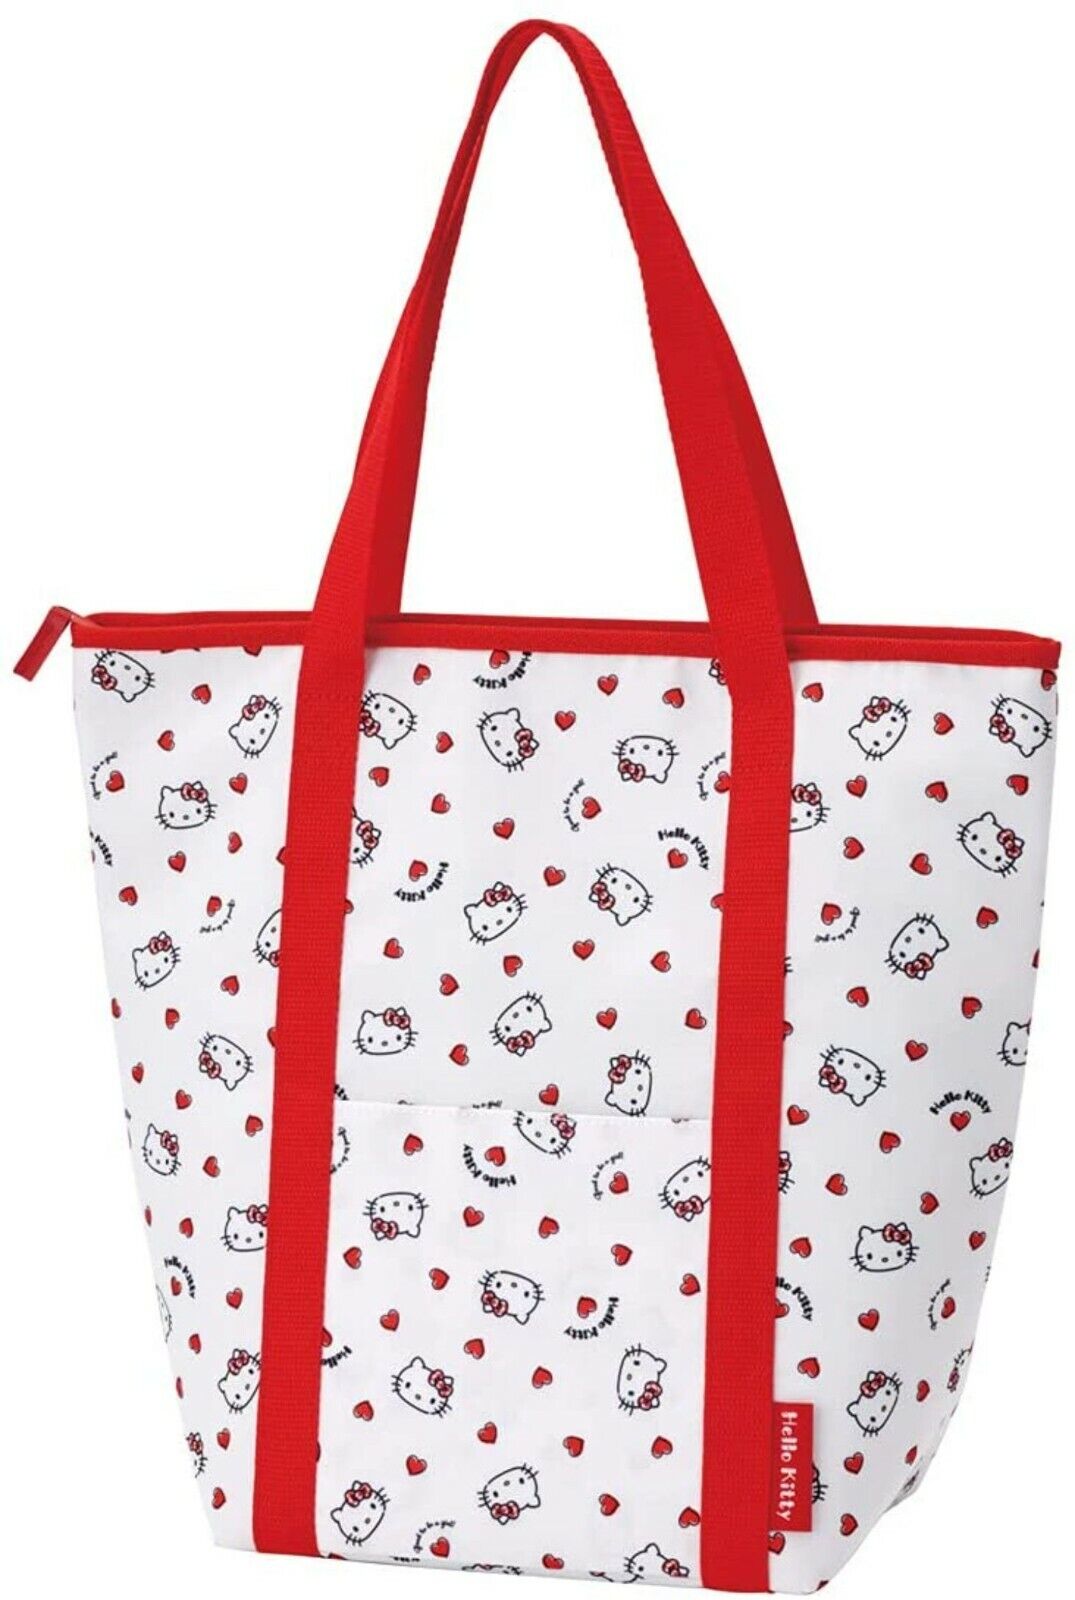 Sanrio Hello Kitty Shopping Bag Tote Bag Keep Cooling Bag KCEB1-A Japan